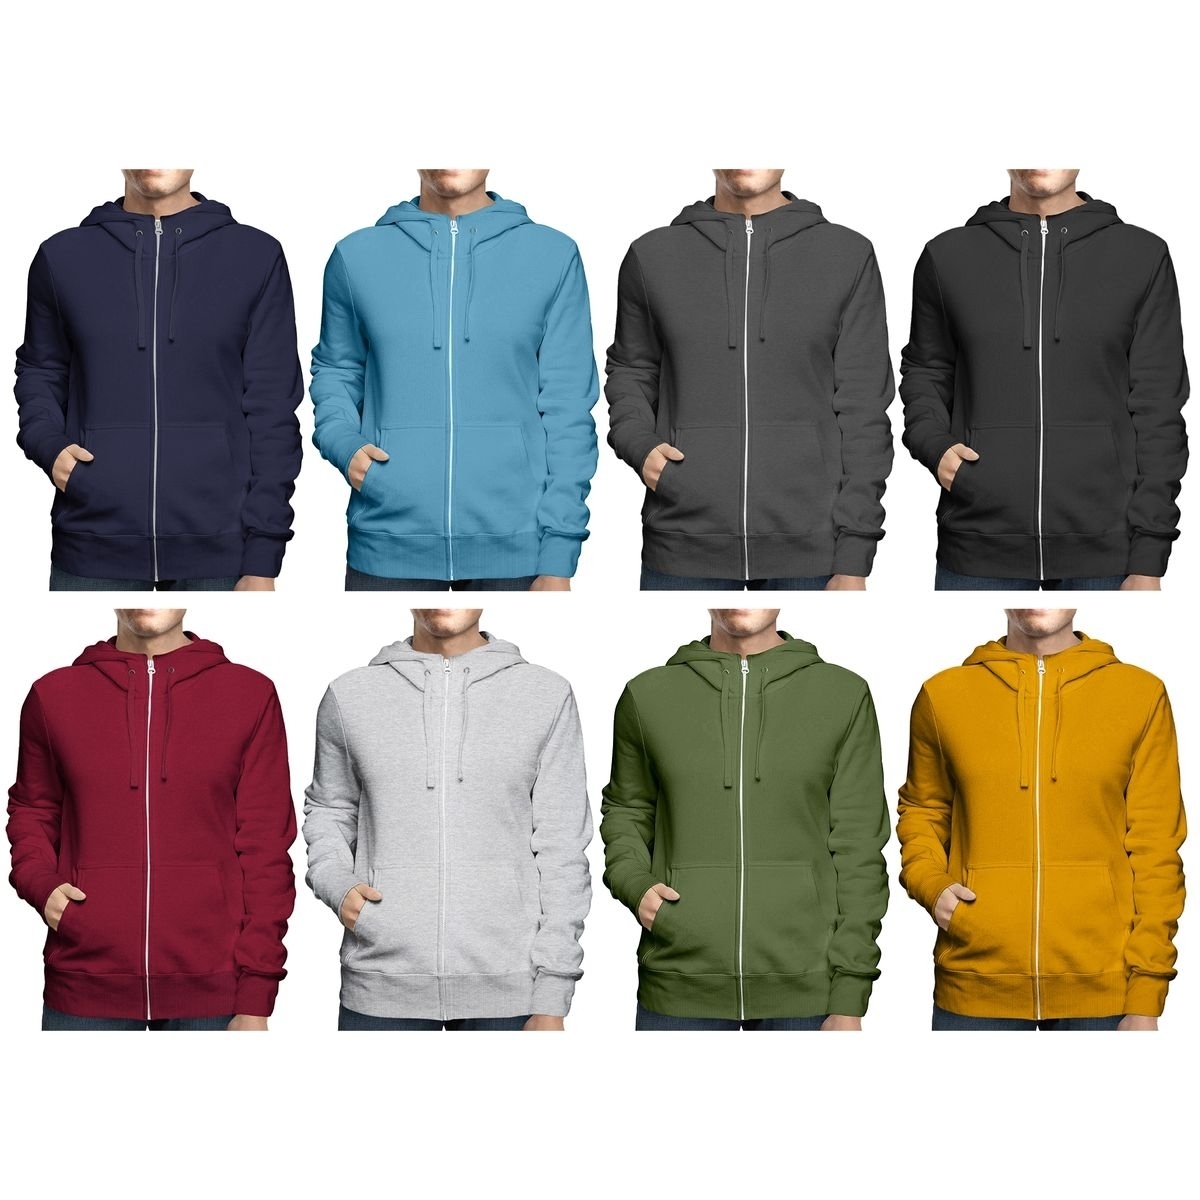 2-Pack: Men's Winter Warm Soft Cozy Full Zip-Up Fleece Lined Hoodie Sweatshirt - Large